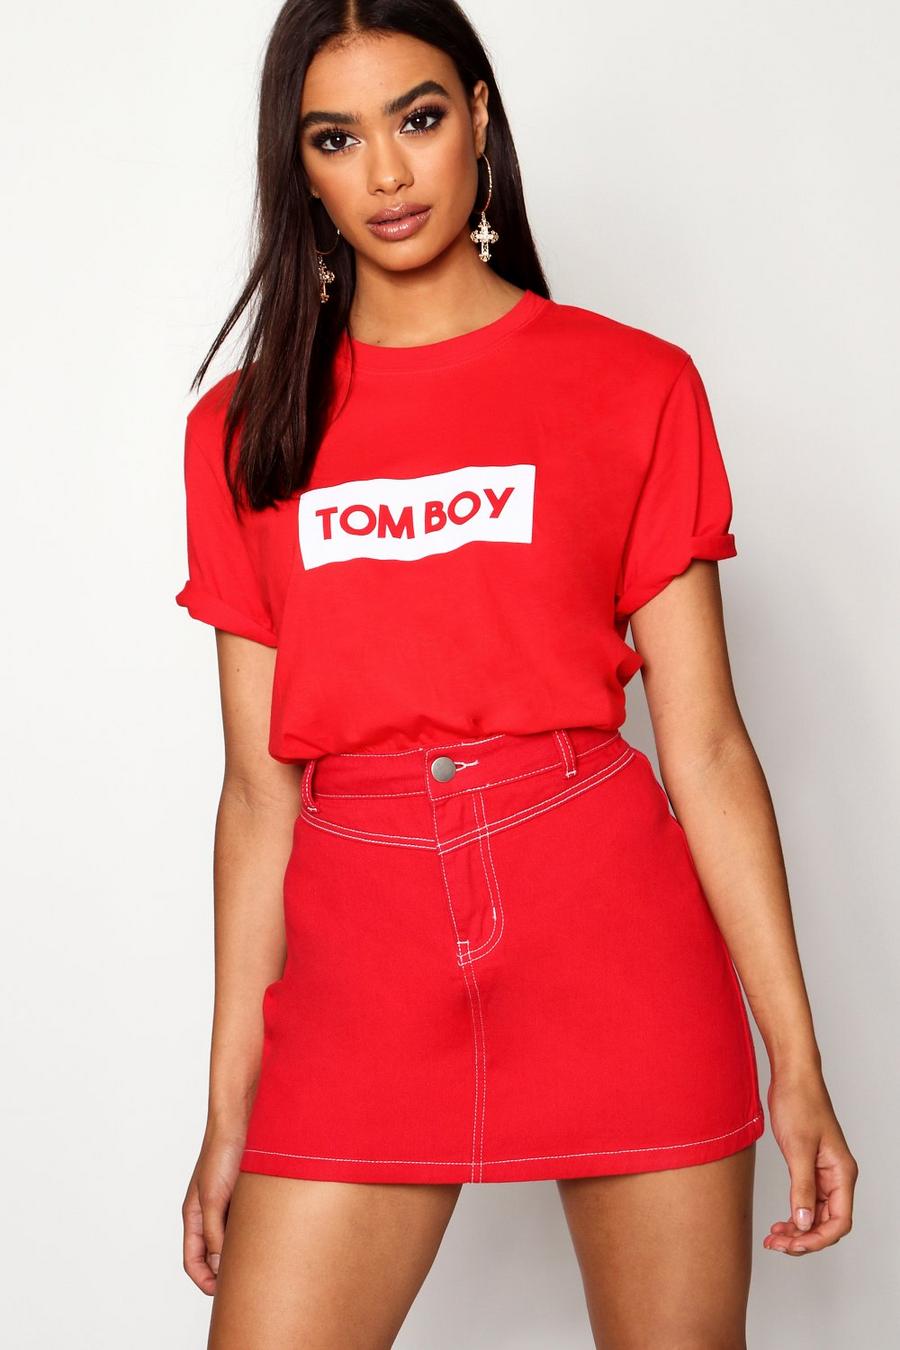 Tomboy Slogan T-Shirt image number 1